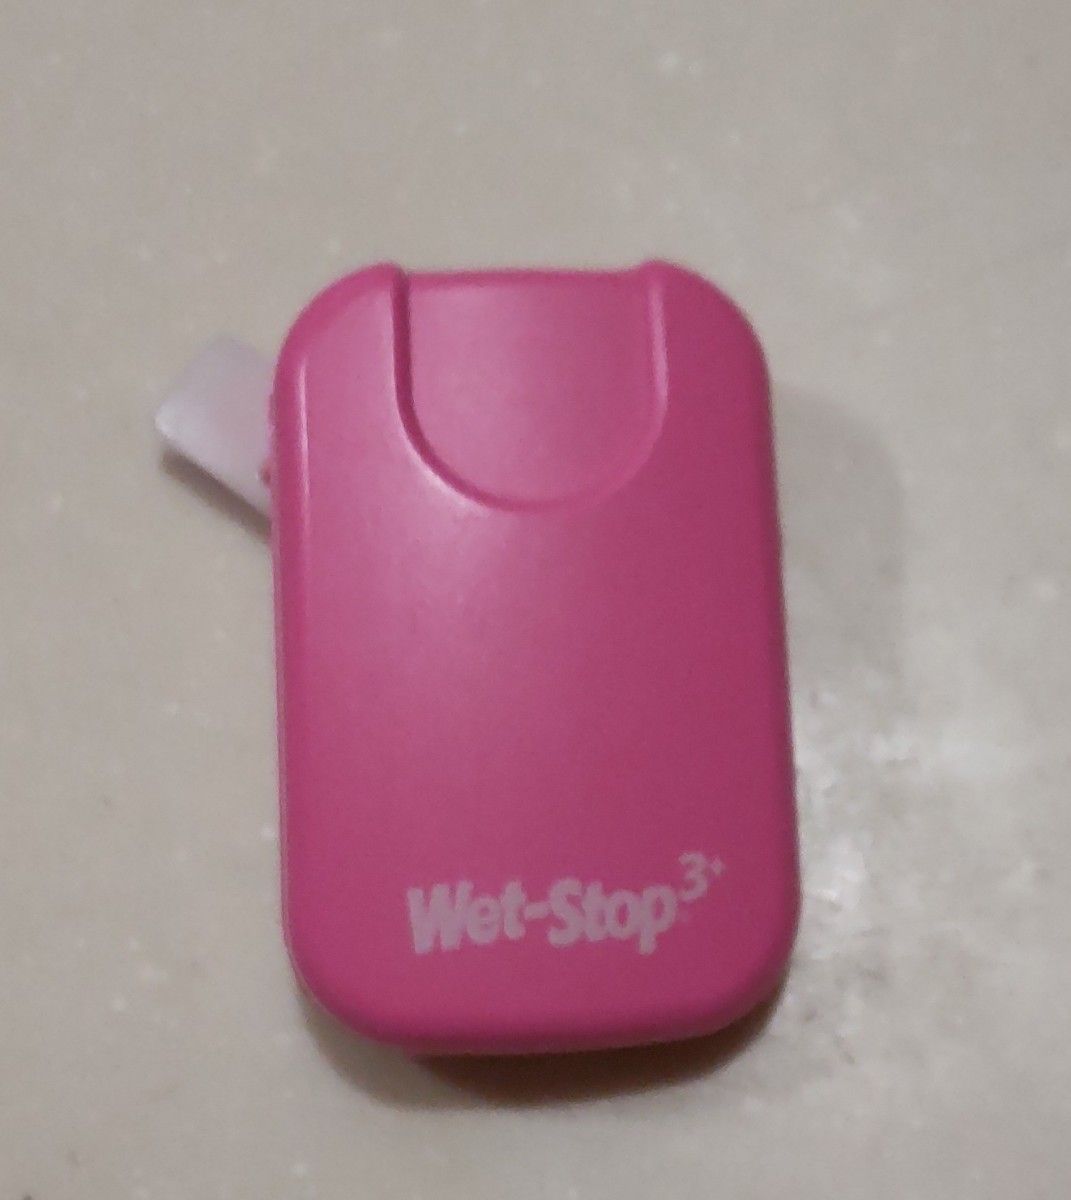 ウェットストップ3+ おねしょモニター 夜尿ブザー ピンク 並行輸入品 動作確認済み  本体のみ